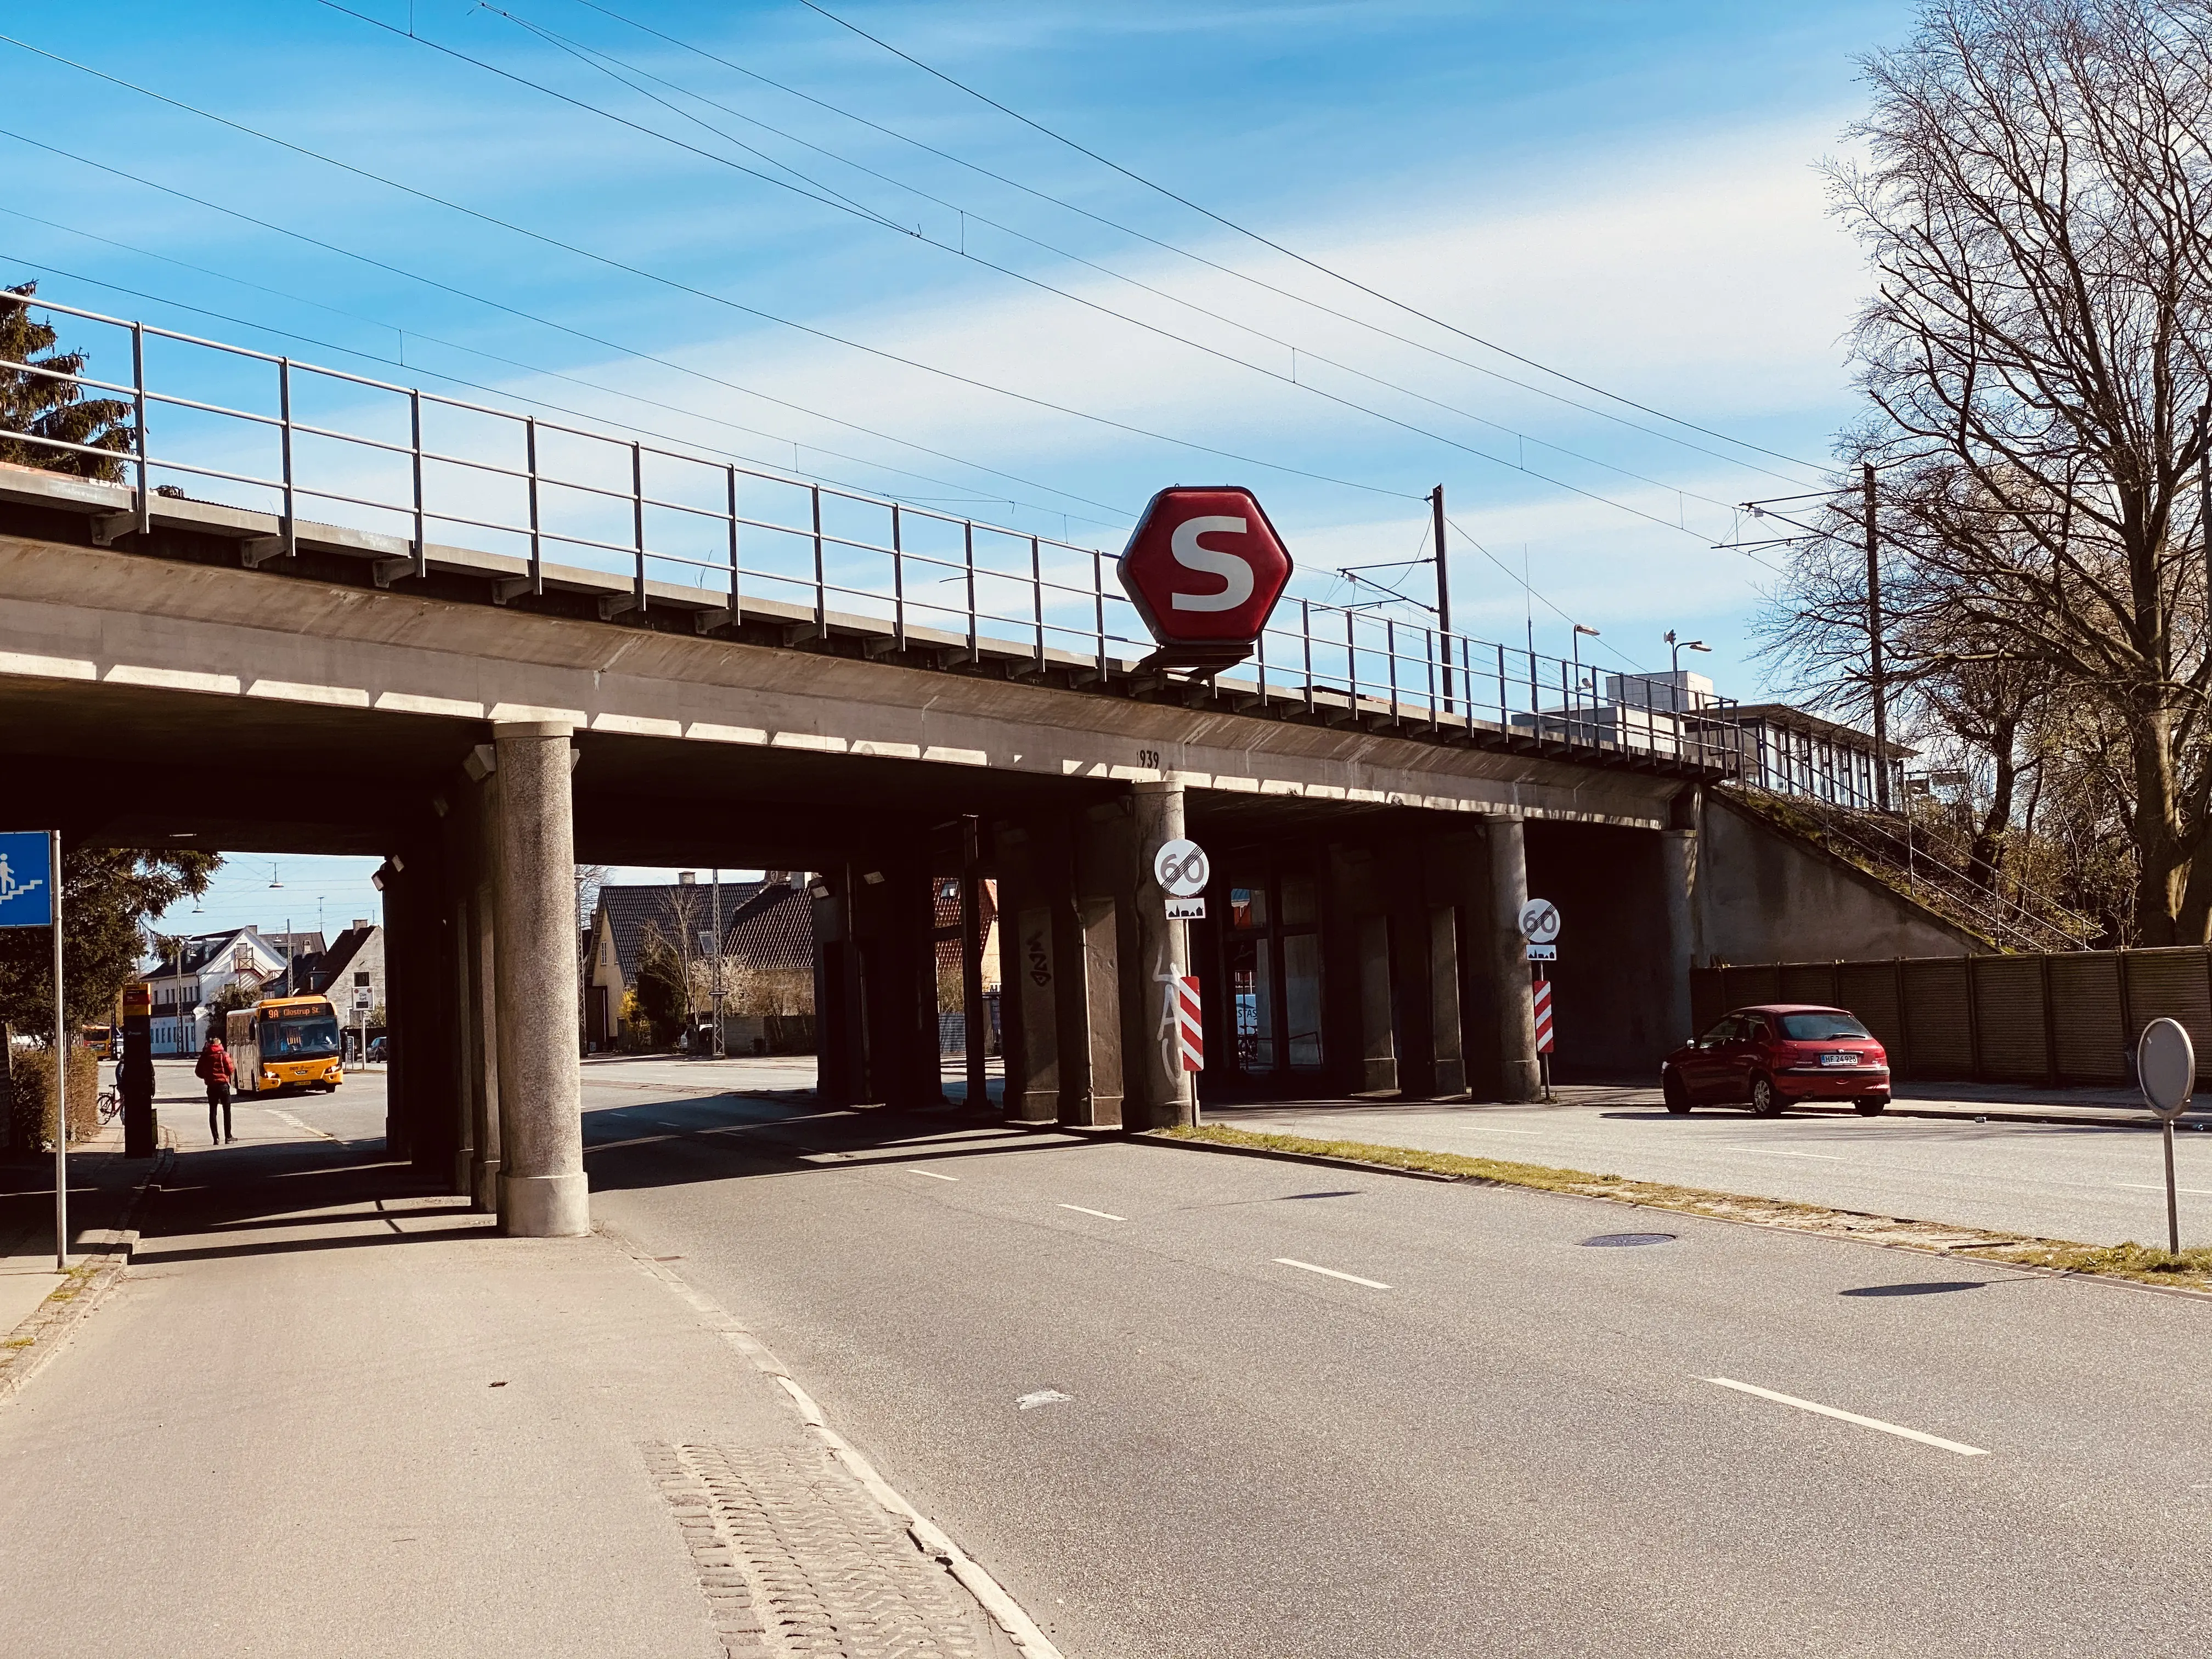 Billede af Jyllingevej S-togstrinbræt.